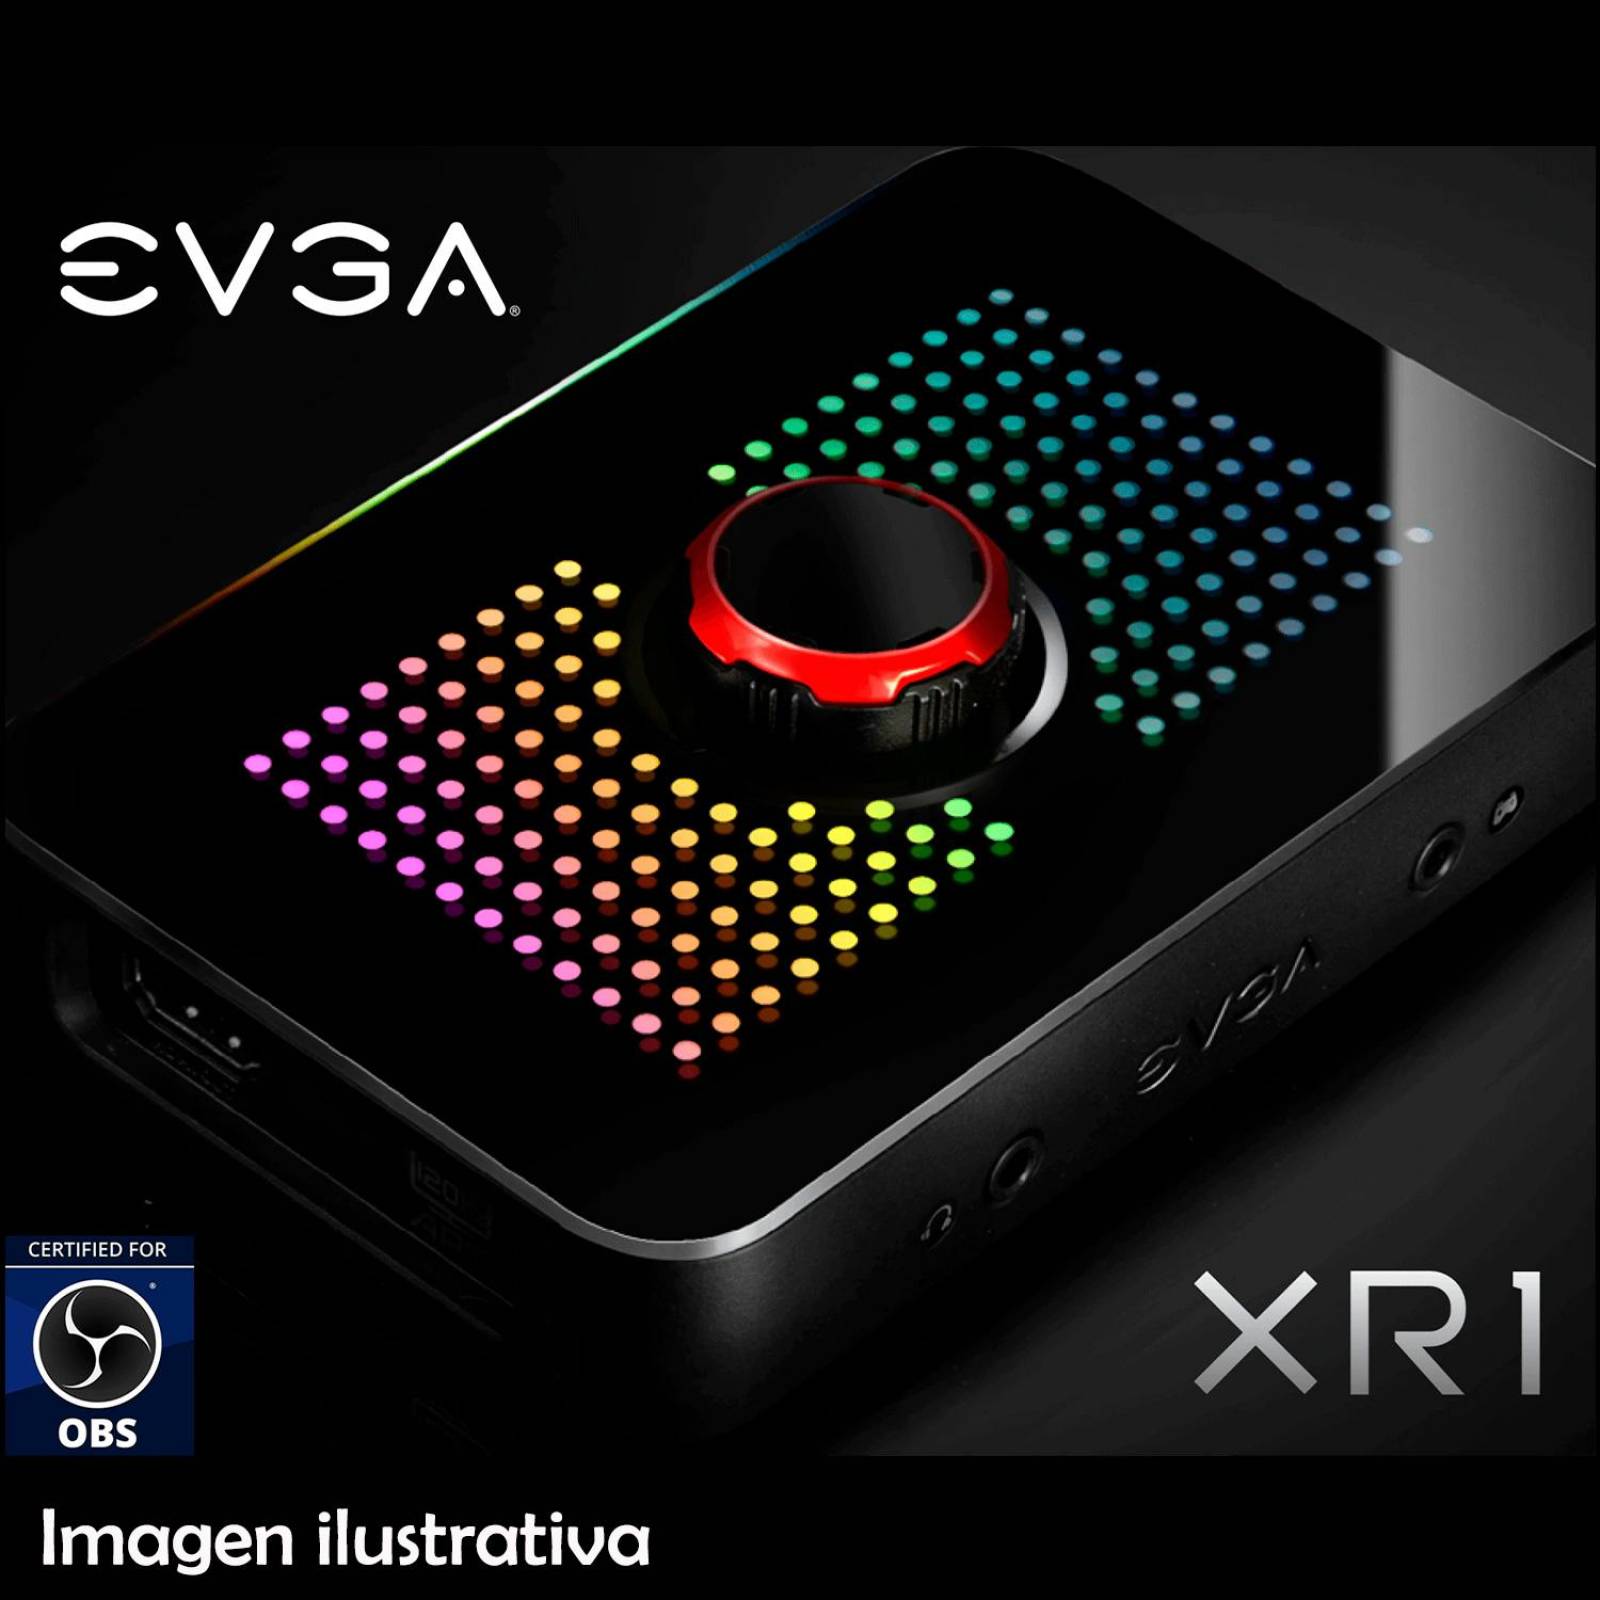 Capturadora de Video EVGA XR1 ARGB 4K HDR 1080p USB HDMI 141-U1-CB10-LR 